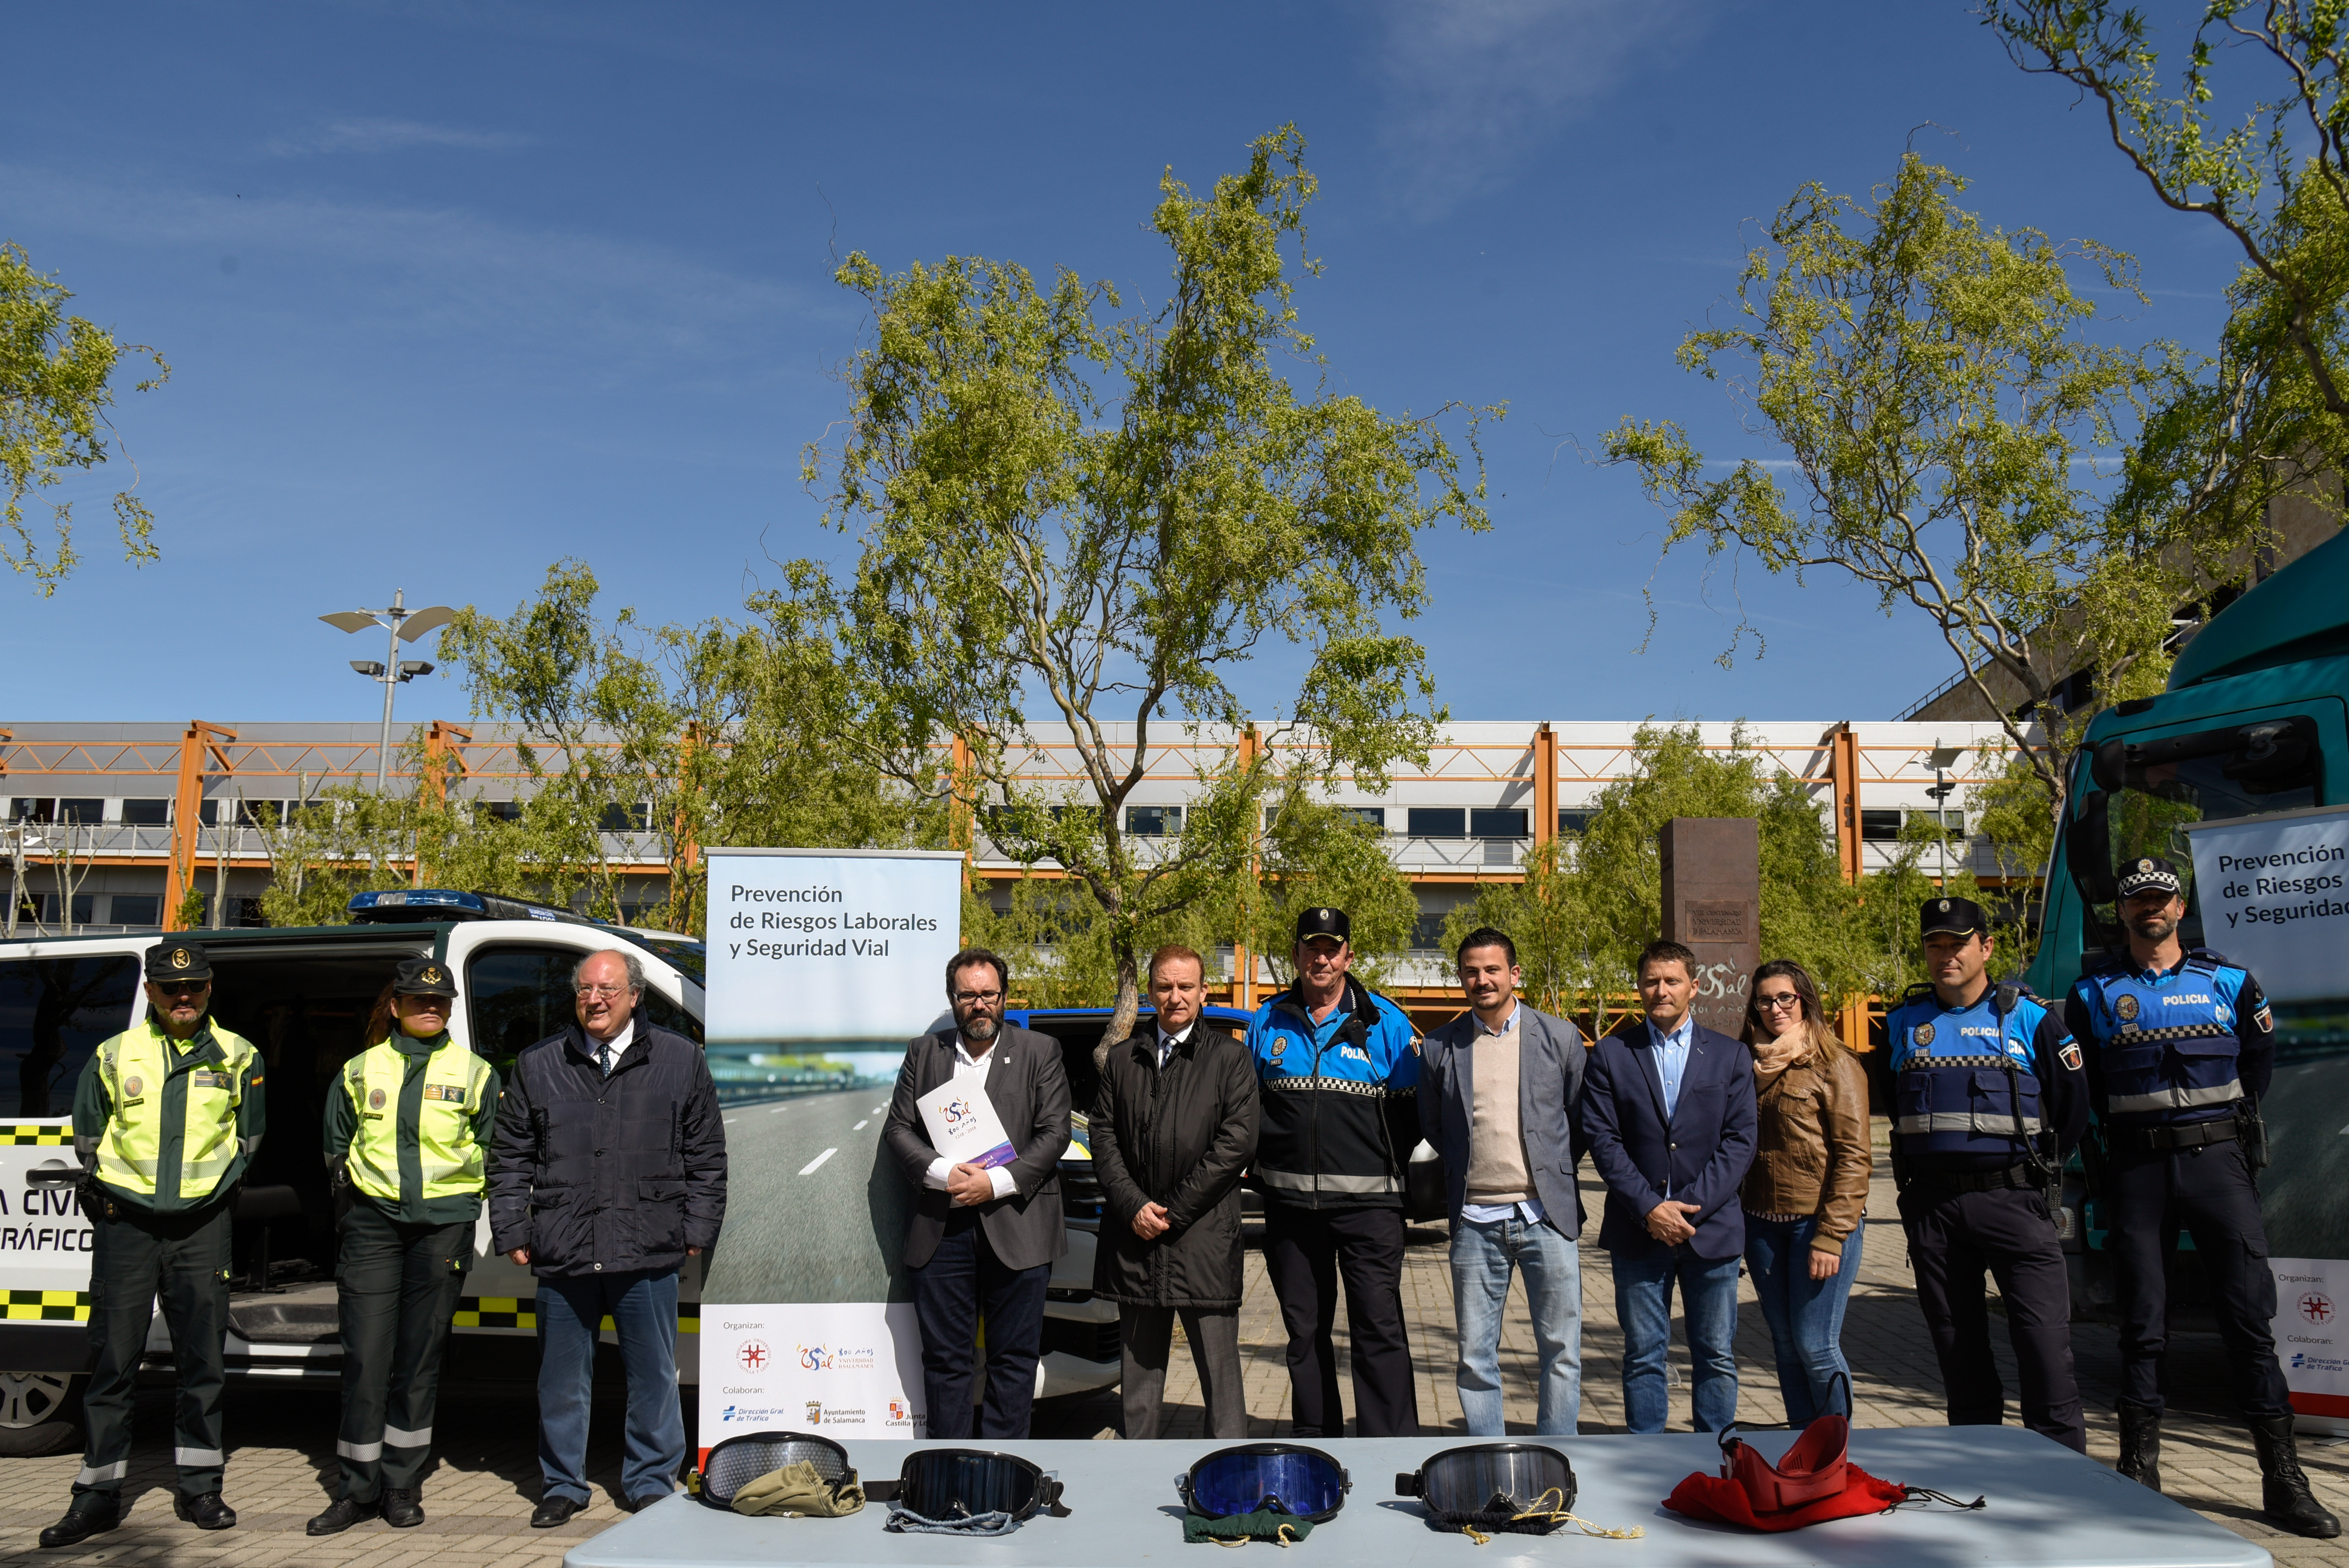 La Universidad de Salamanca presenta una jornada sobre seguridad vial y prevención de riesgos laborales en el Campus Miguel de Unamuno